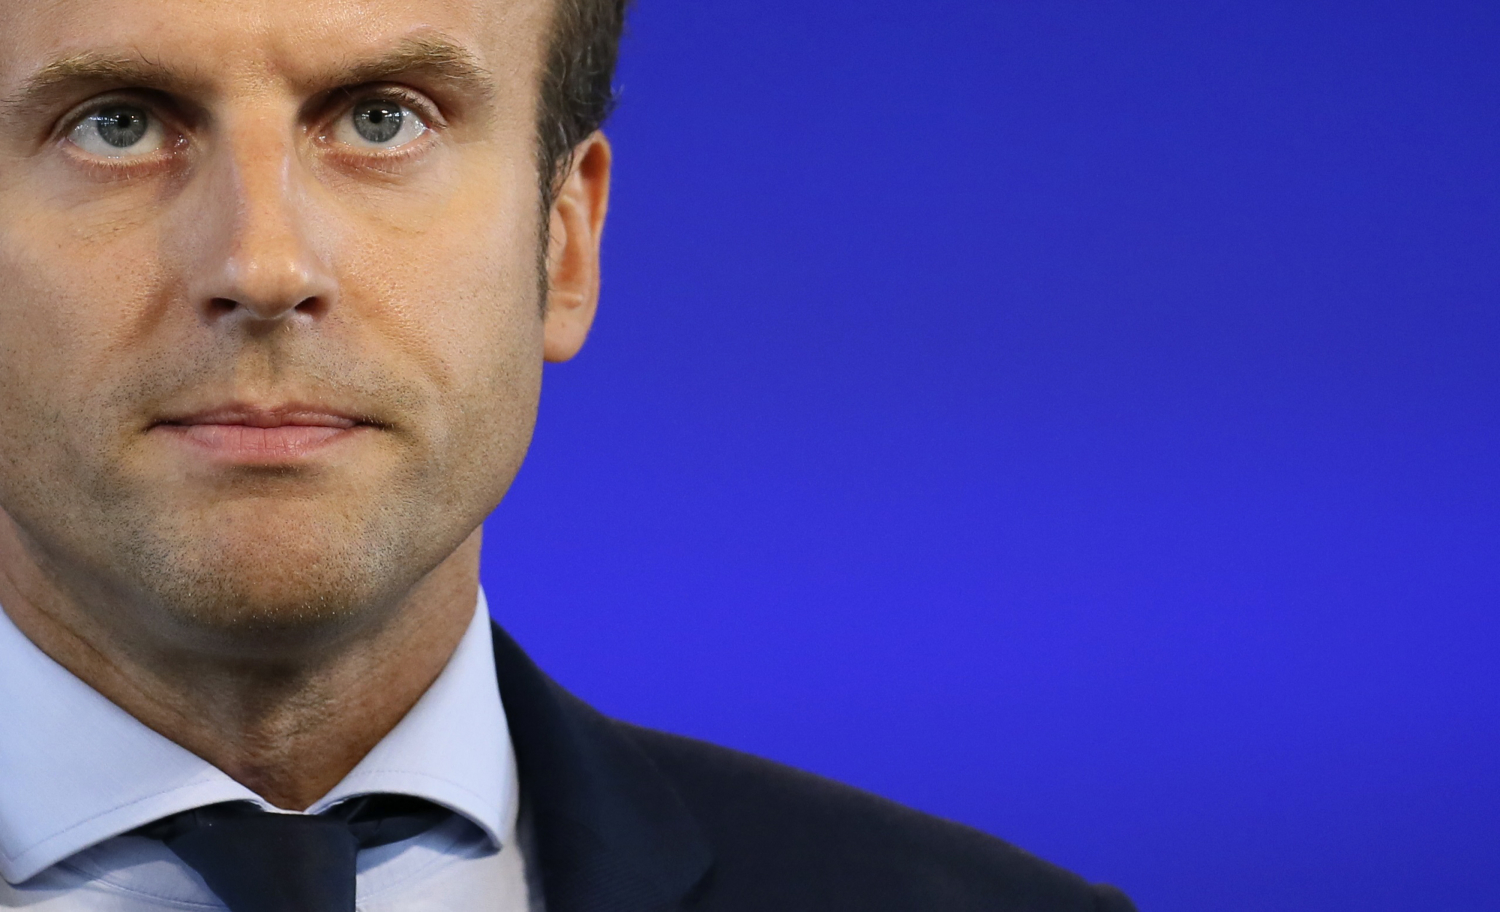 Dimite Emmanuel Macron, el ministro más crítico con el gobierno de Hollande